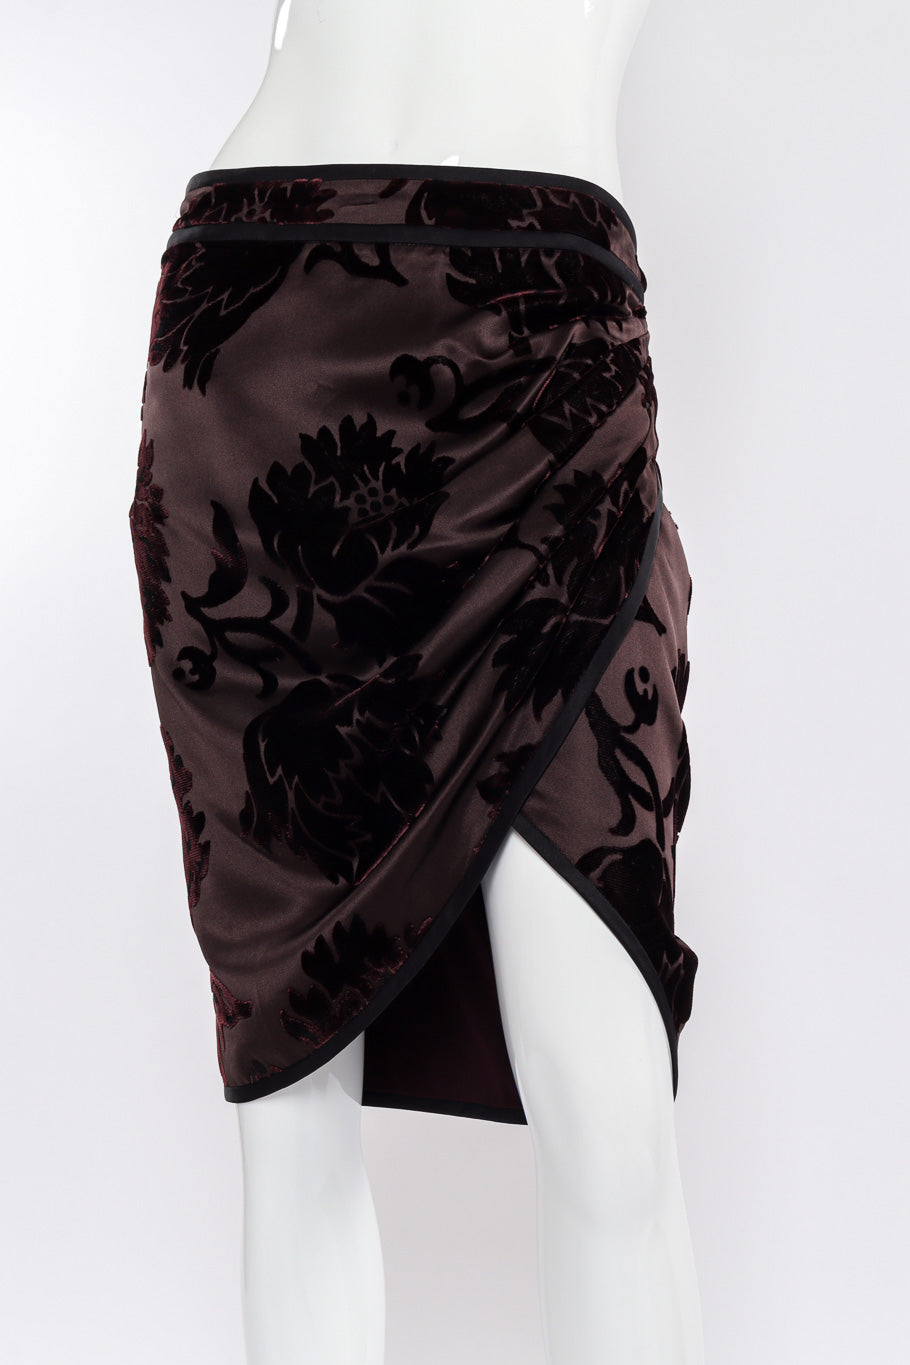 Gucci Velvet Burnout Wrap Skirt front view on mannequin @Recessla